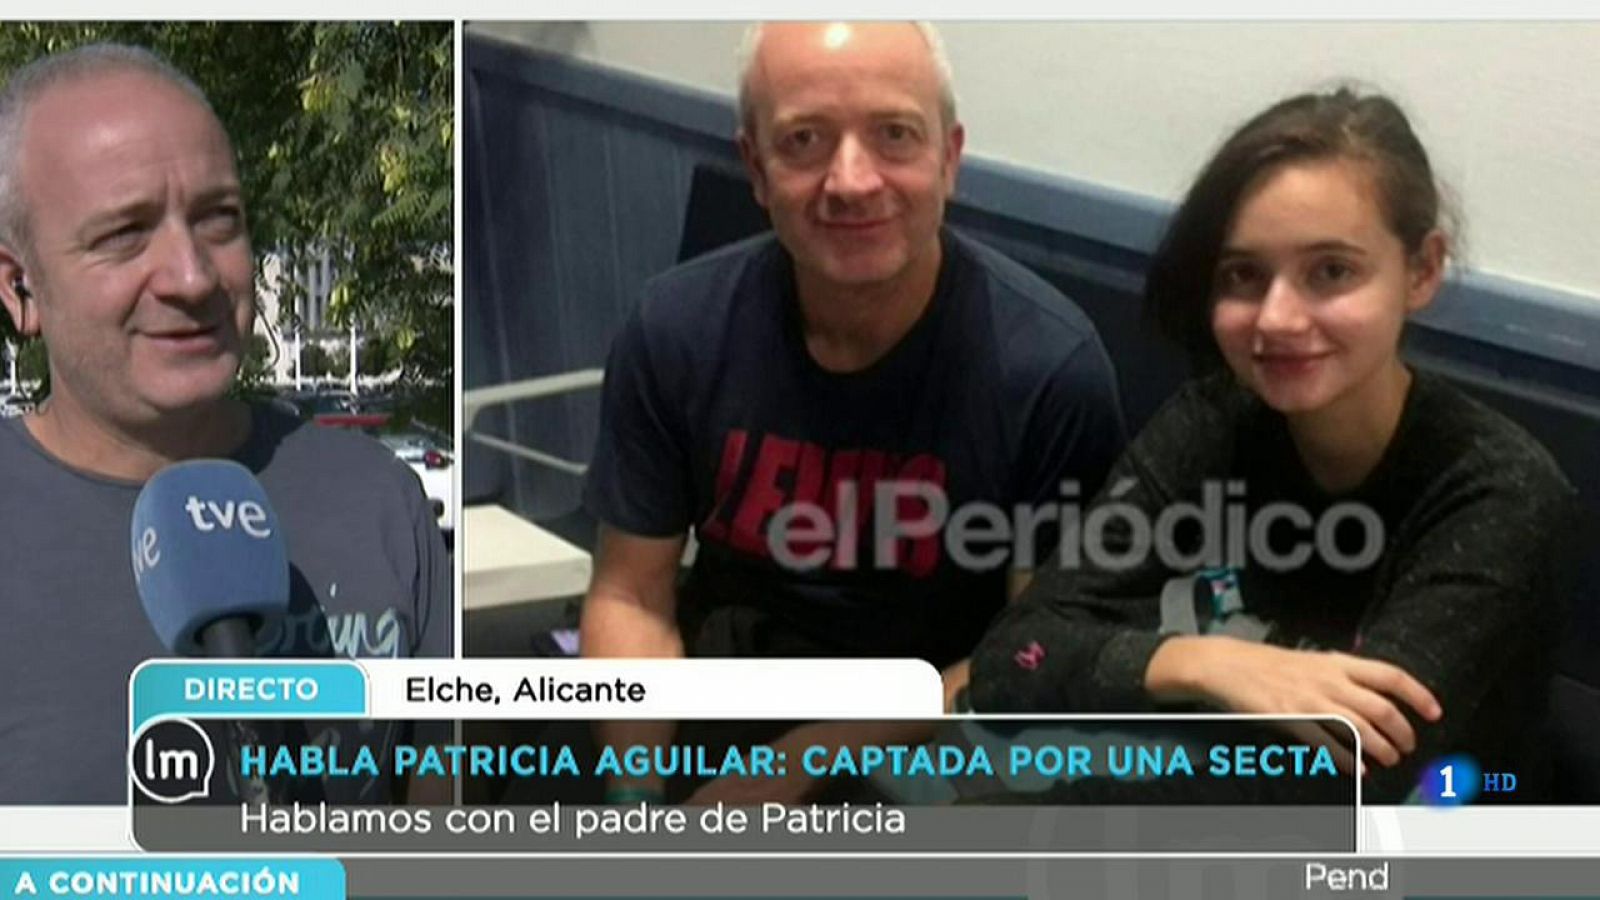 La Mañana - La familia de Patricia Aguilar reclama una ley antisectas